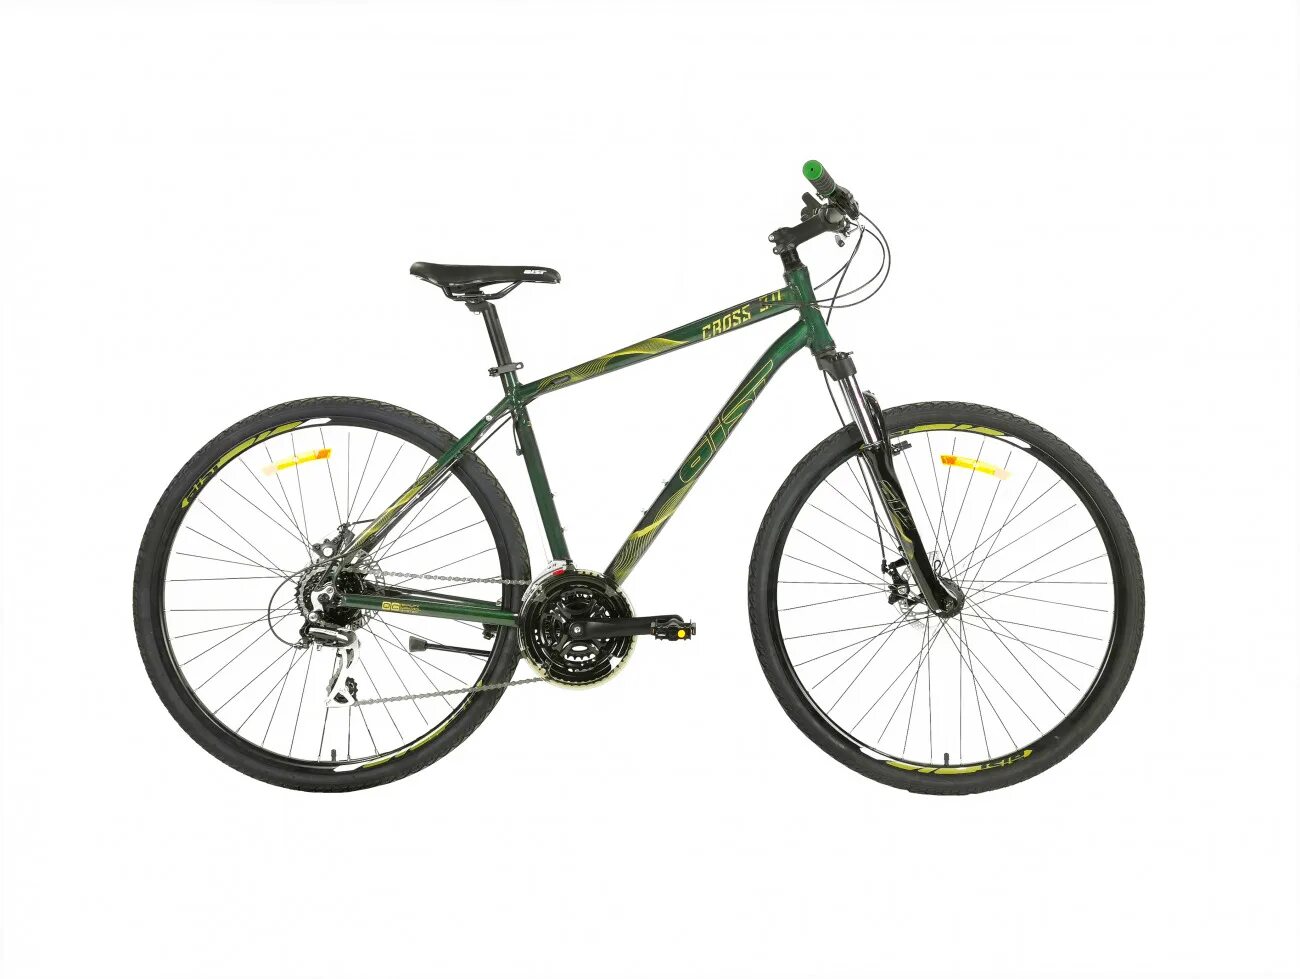 Купить велосипед в минске недорого. Велосипед Aist Cross 1.0. Велосипед Aist 28. Аист Cruiser 1.0 26. Fuji absolute 1.9.